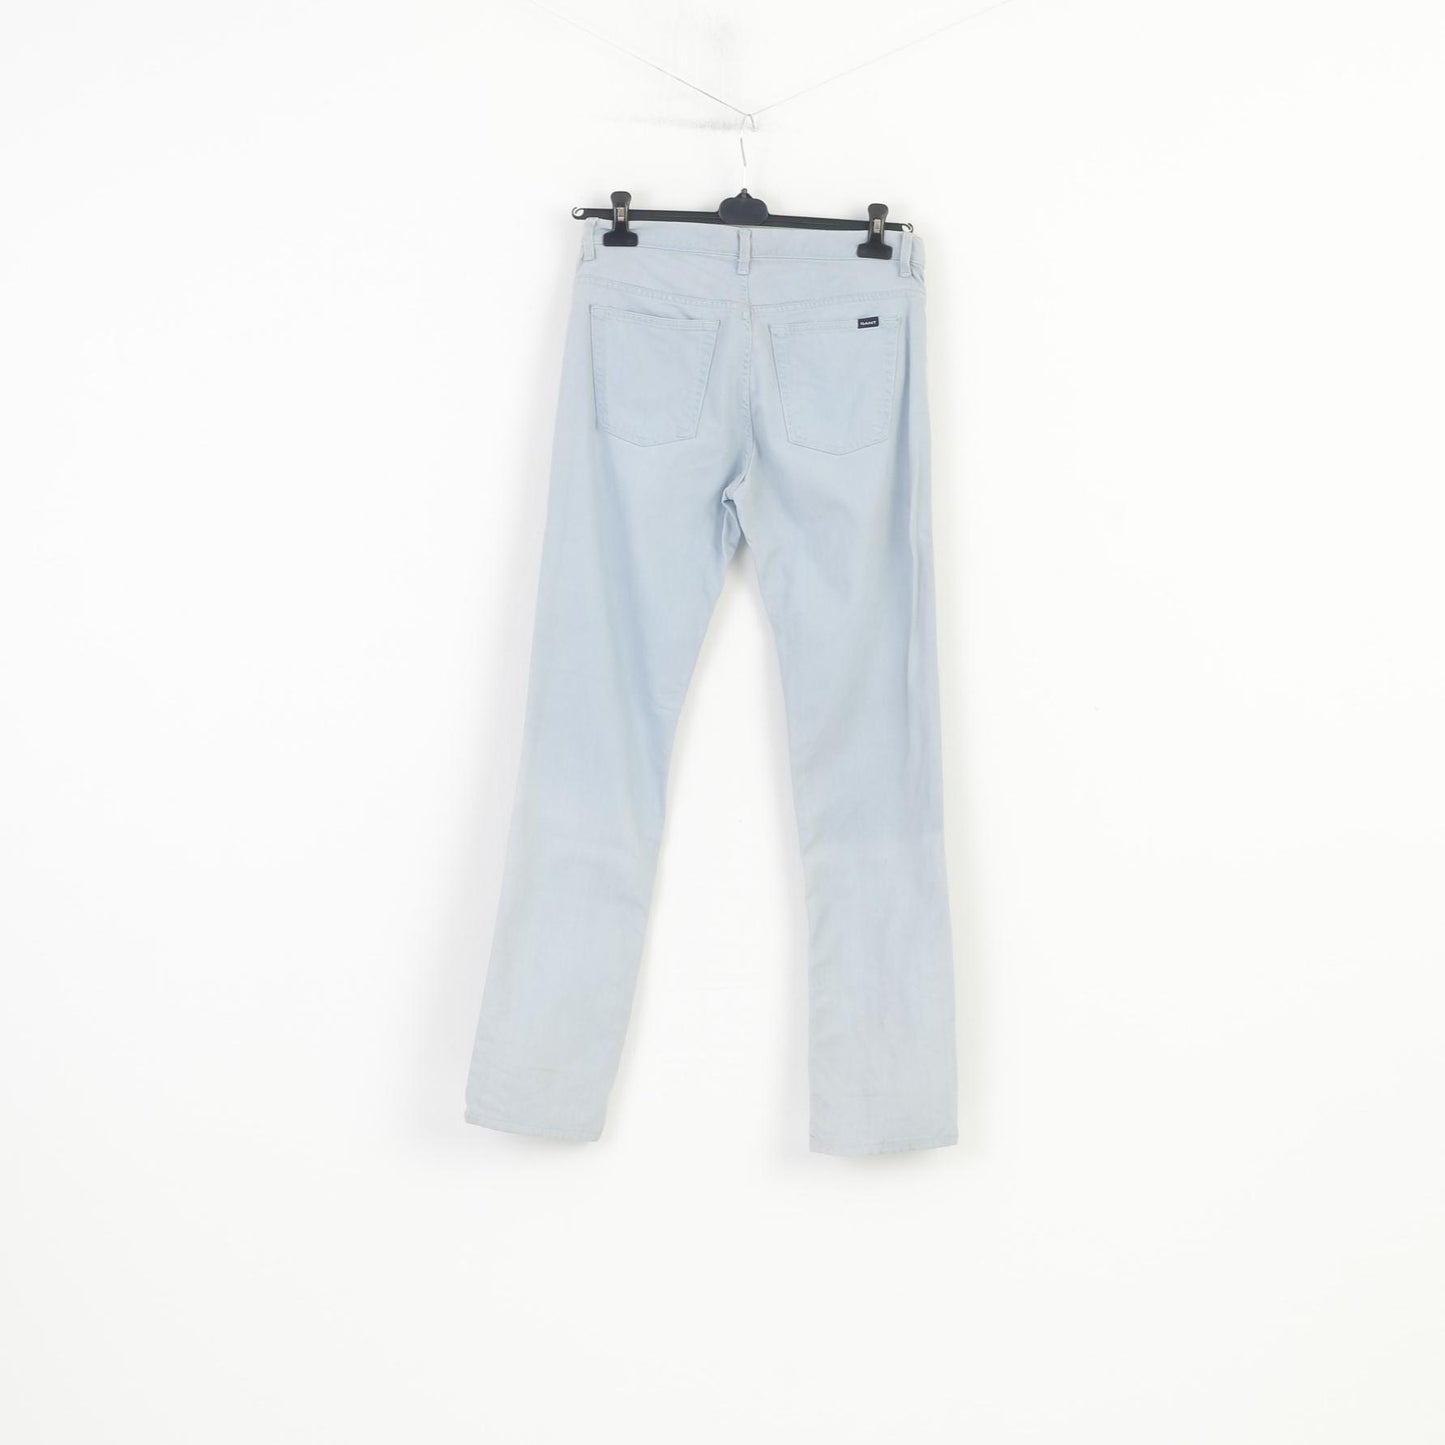 Gant Homme 31 Pantalon Taille Basse Coupe Regular Jambe Droite Jeans Coton Bleu Clair Pantalon Vintage